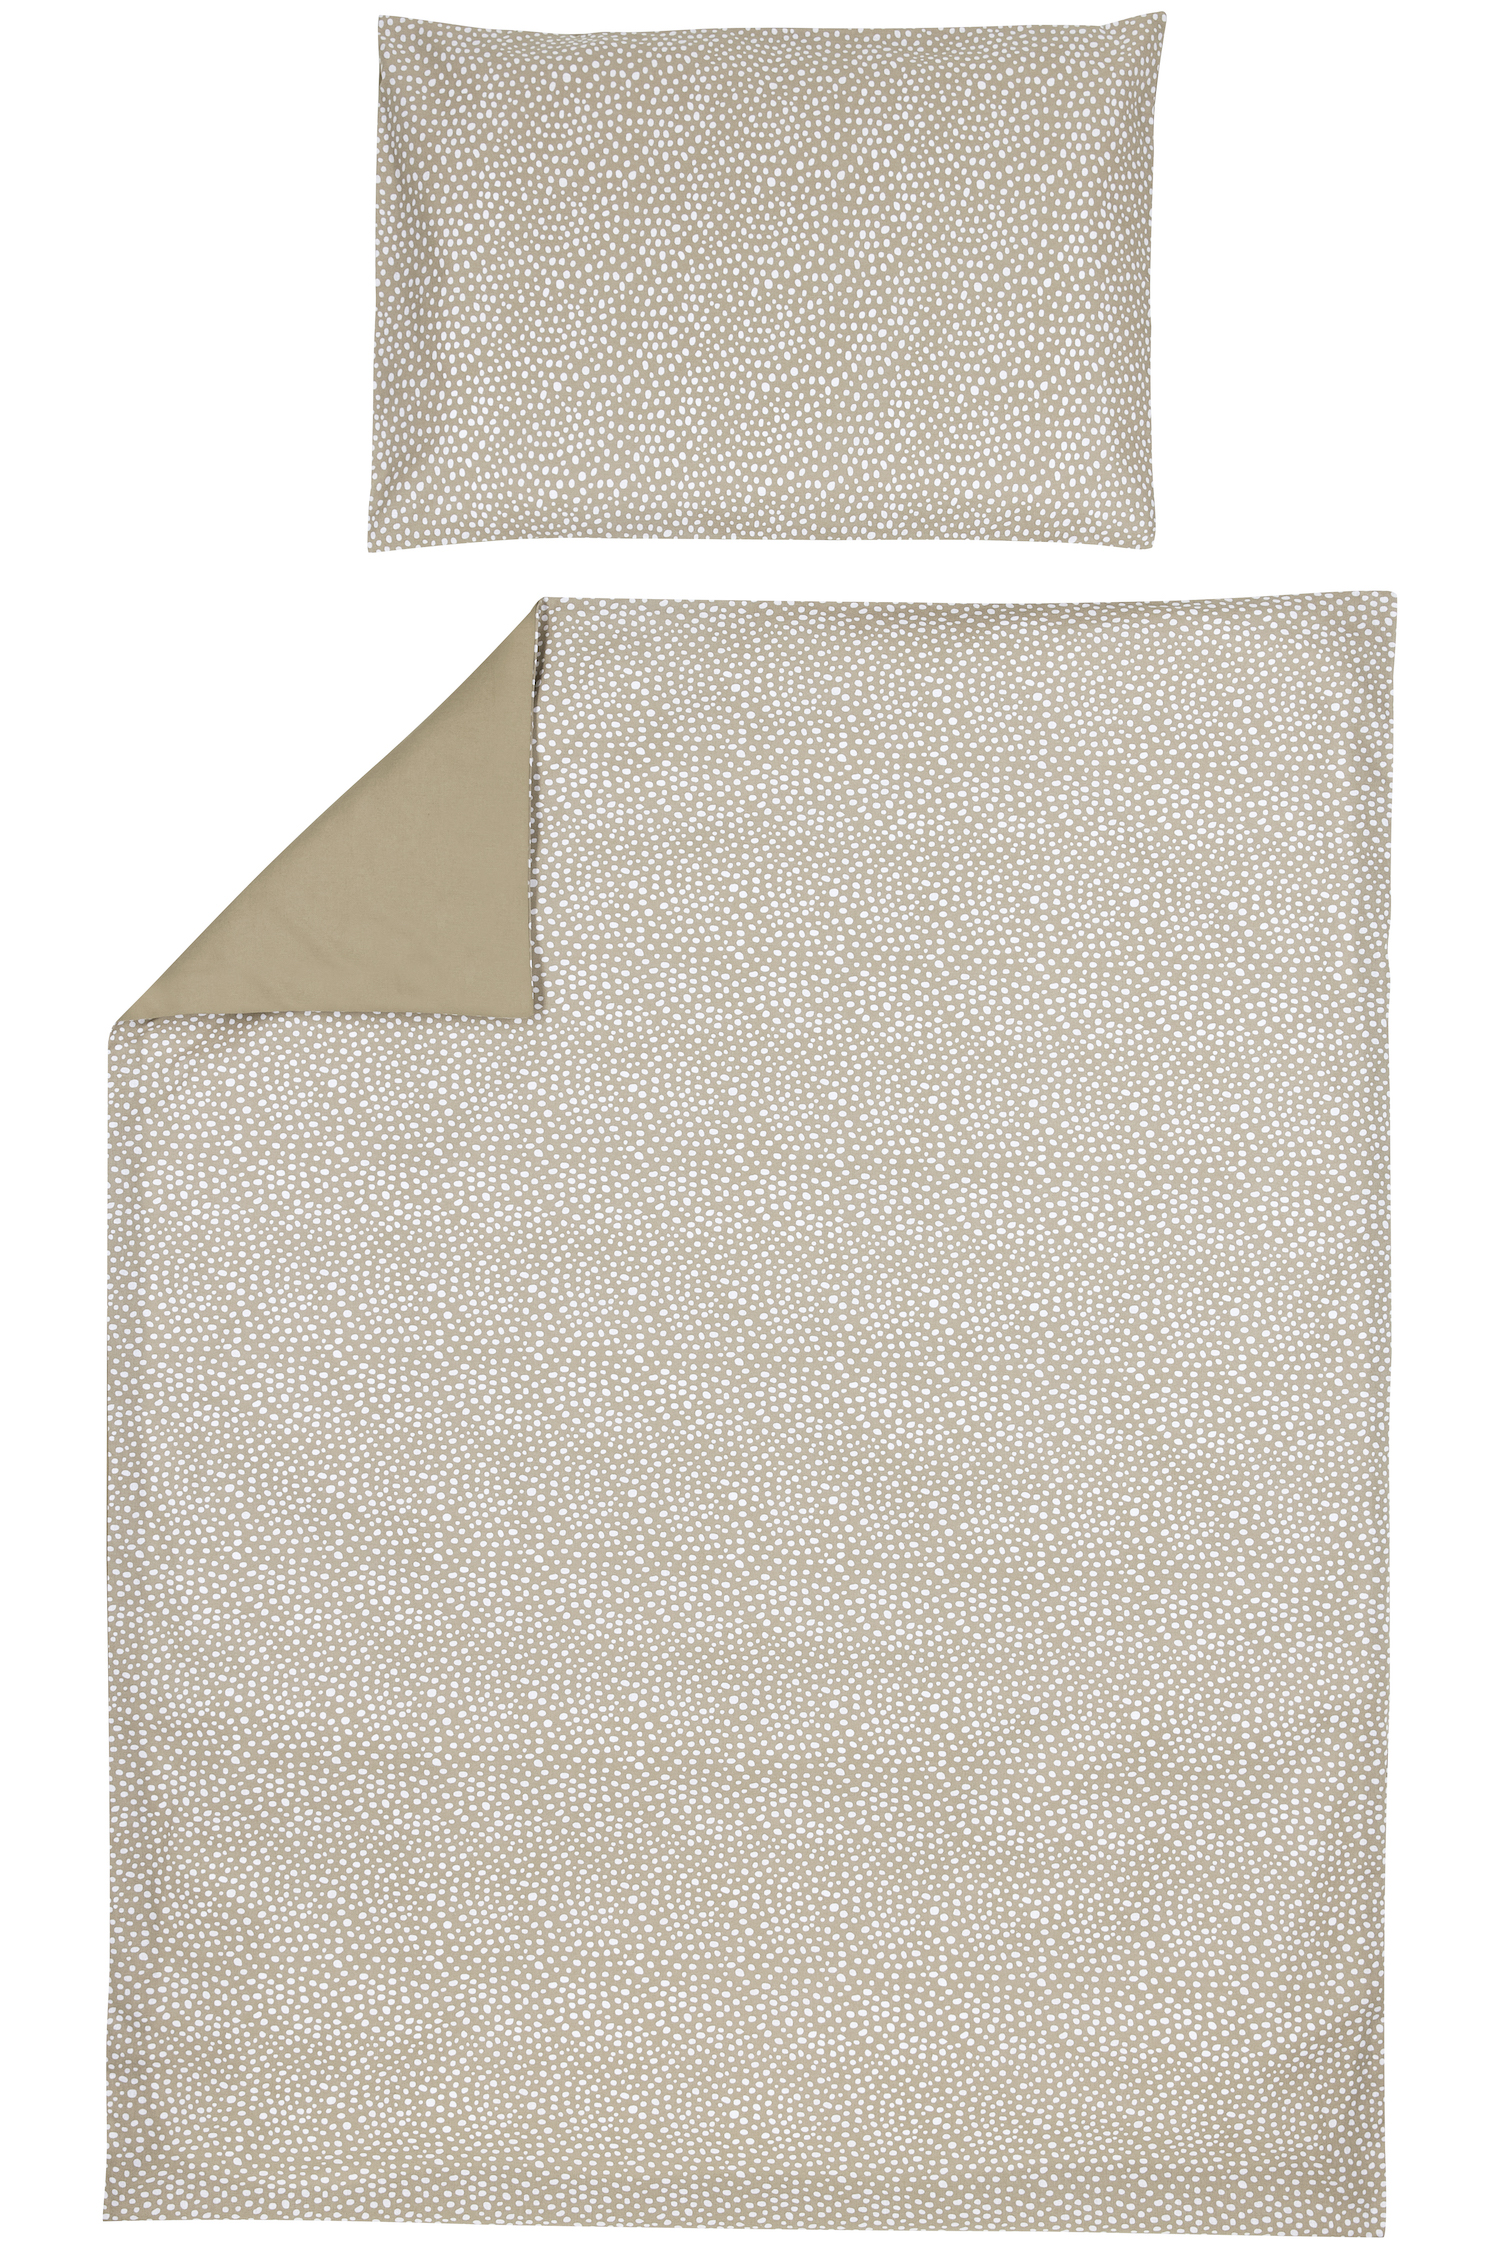 Duvet Cover + Pillowcase Cheetah/Uni - Taupe - 100X135cm